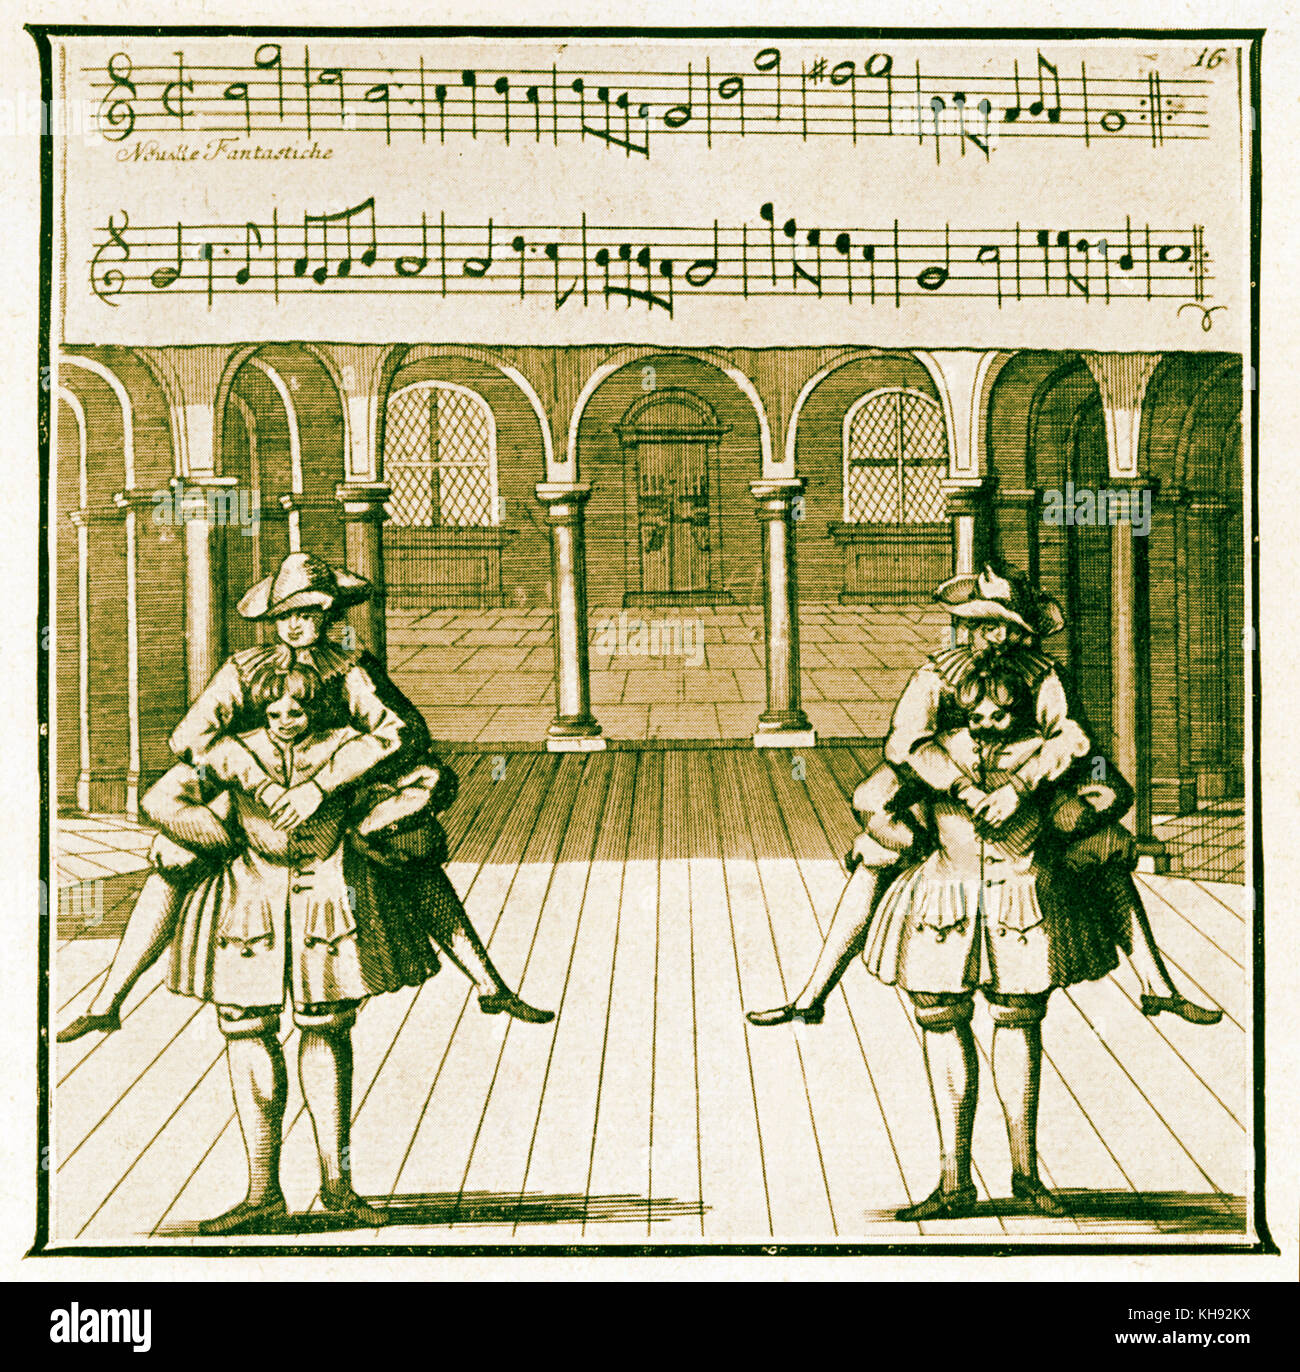 Omestics «' Dance' - de la gravure publié dans Lambrauzi's Ecole de Danse. Danses de ballet du 17ème/18ème siècle. (Anglais : 'Danse de domestiques'). Banque D'Images